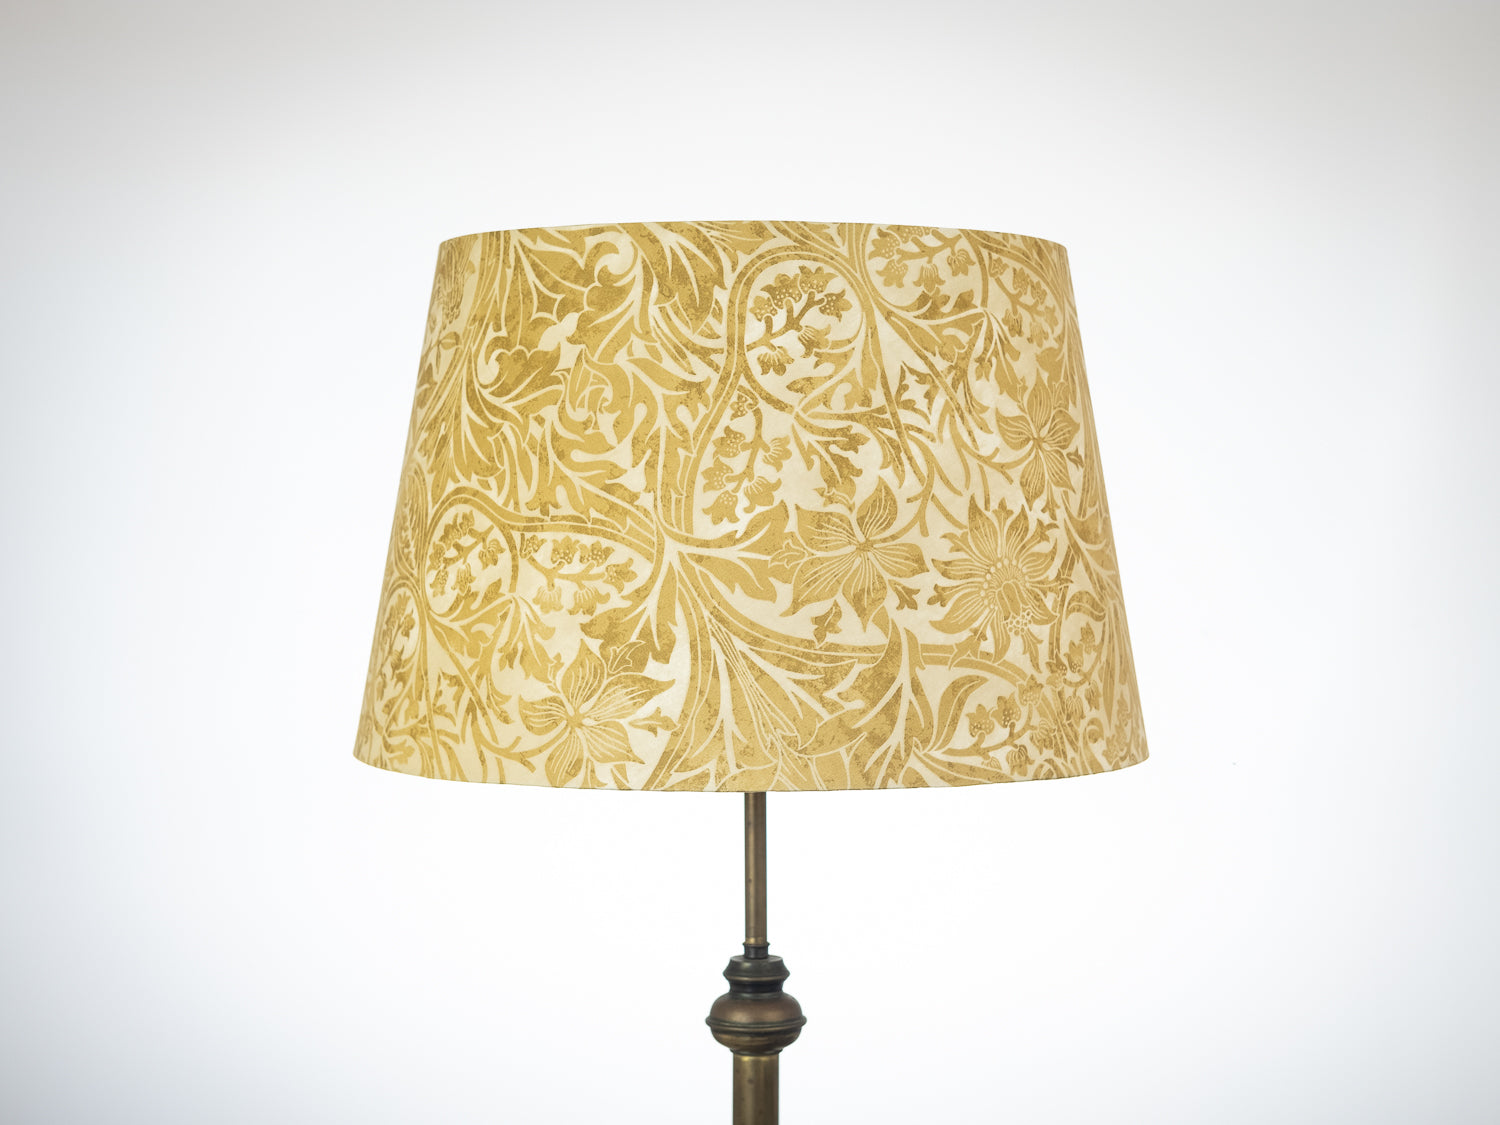 50cm William Morris Tapered Floor Lamp Shade